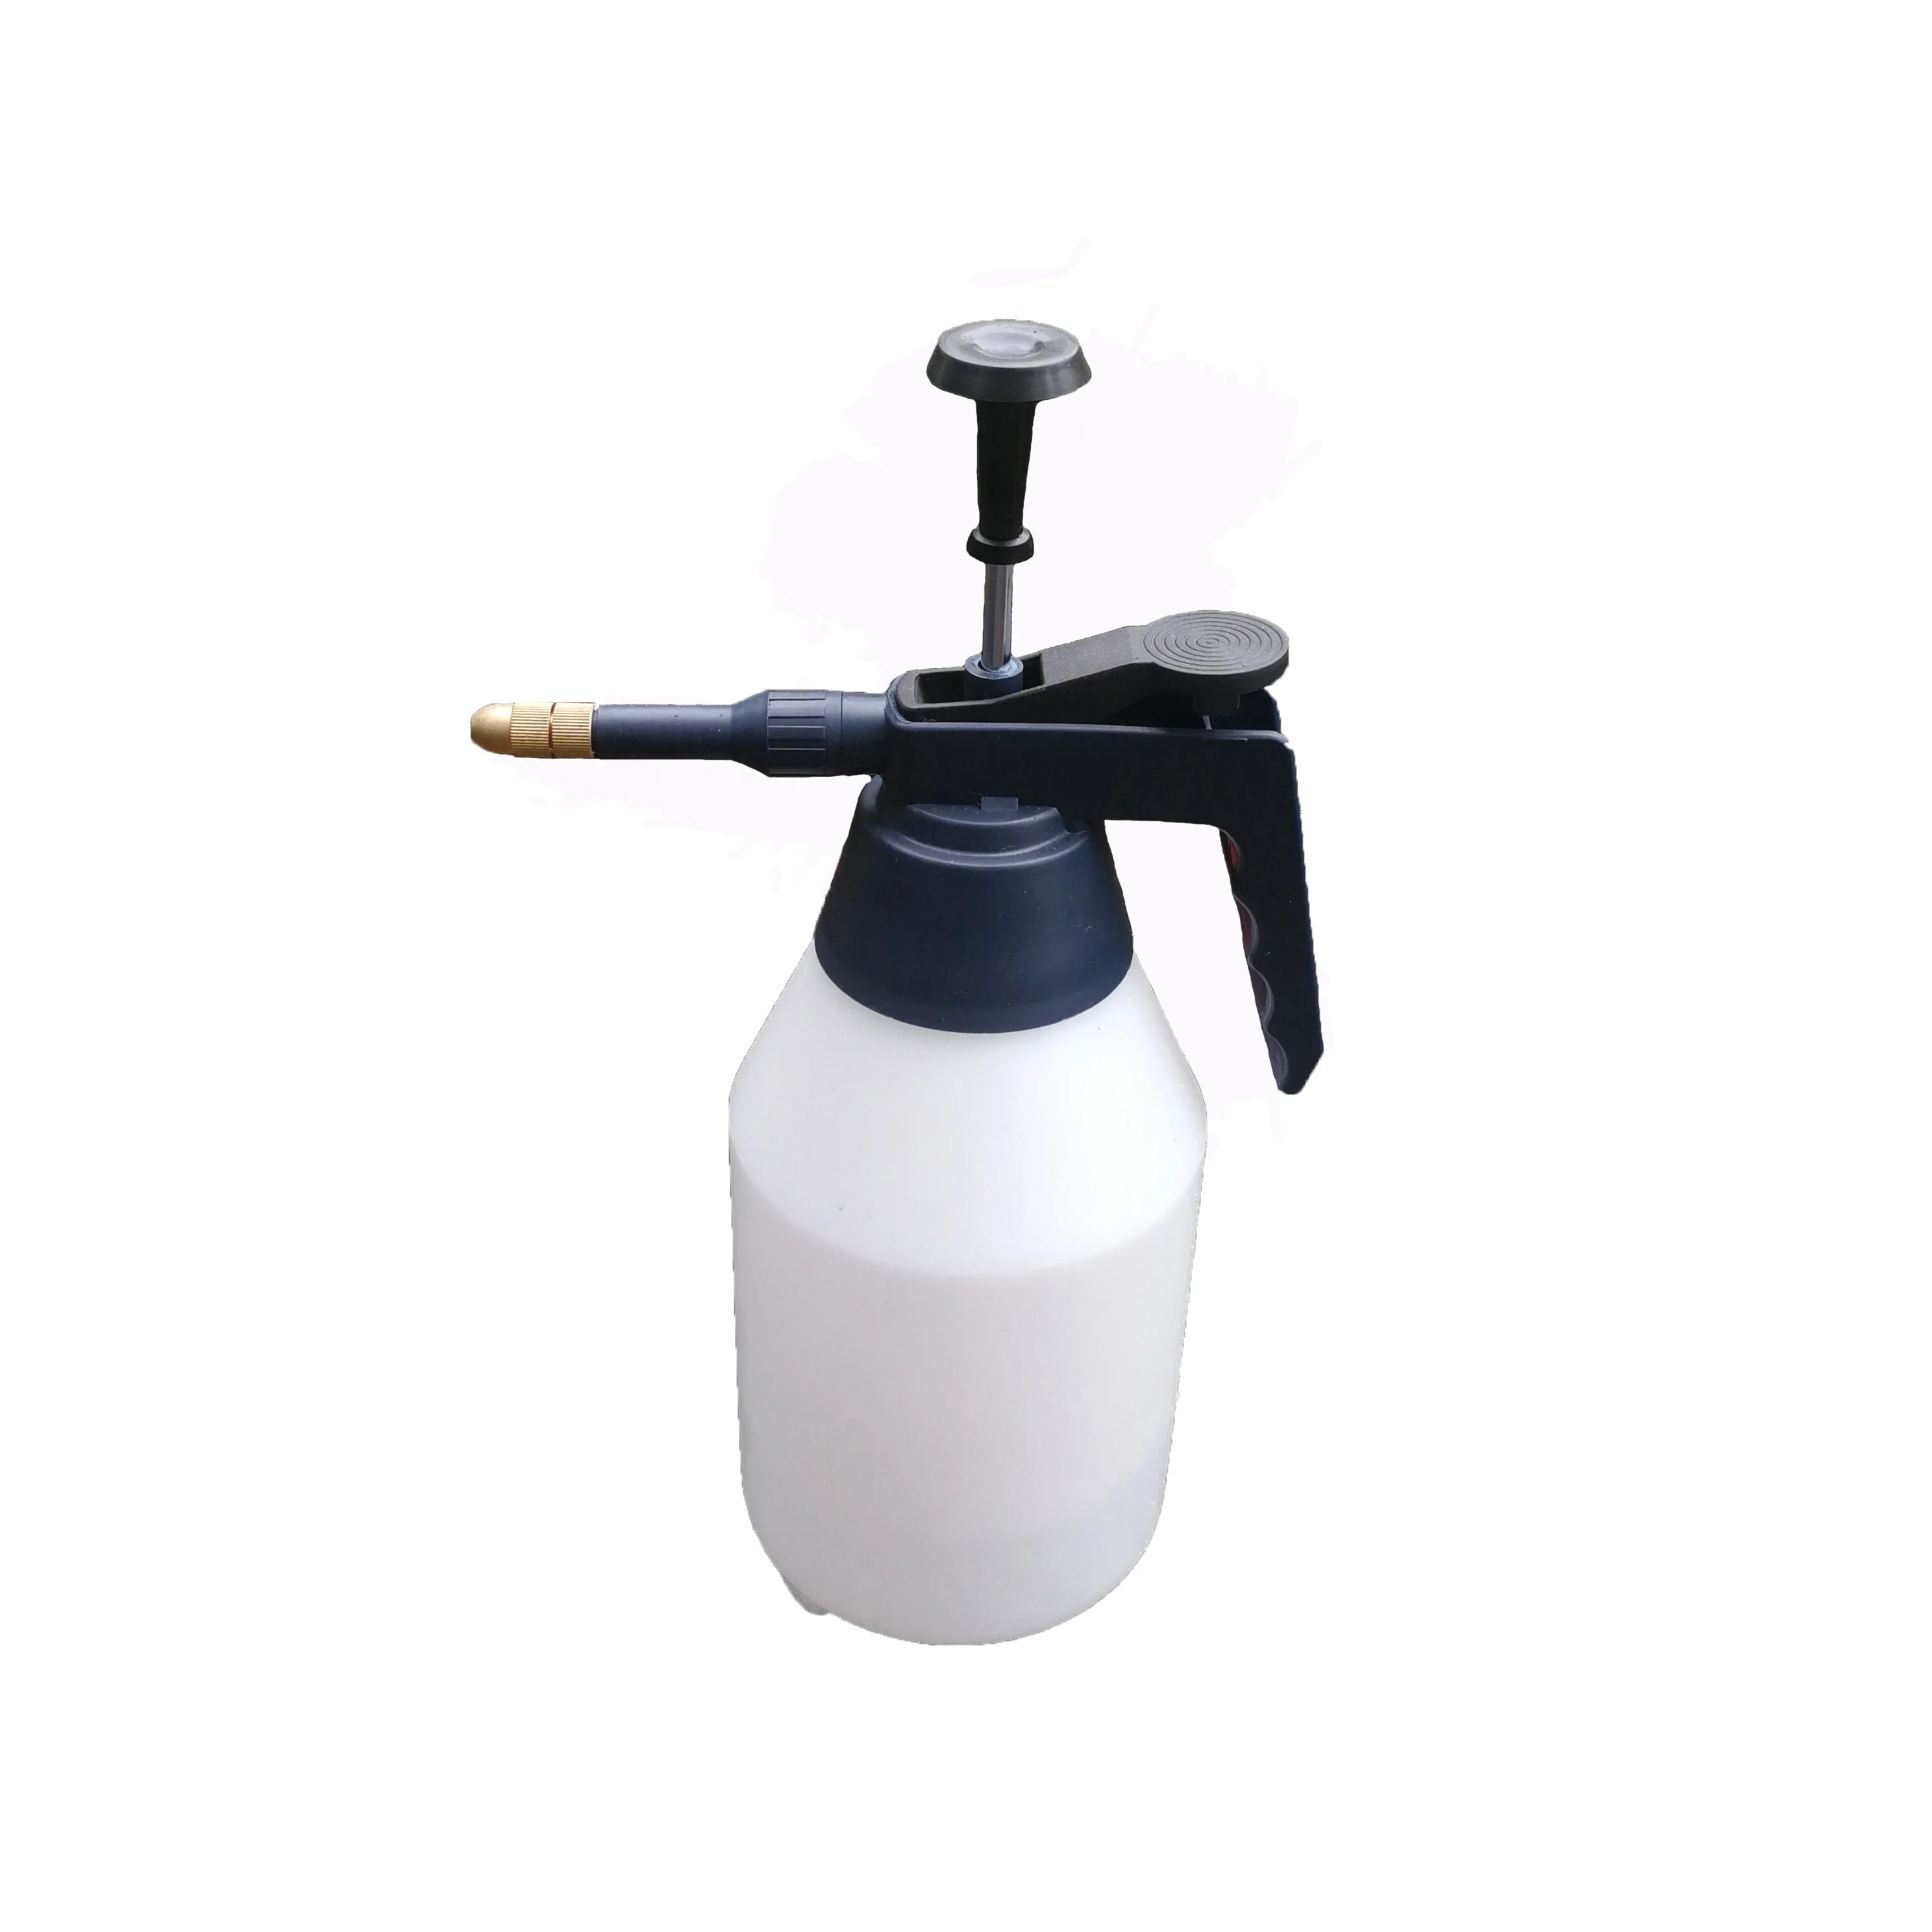 1.5L/50oz Handheld pressure hand pump sprayer